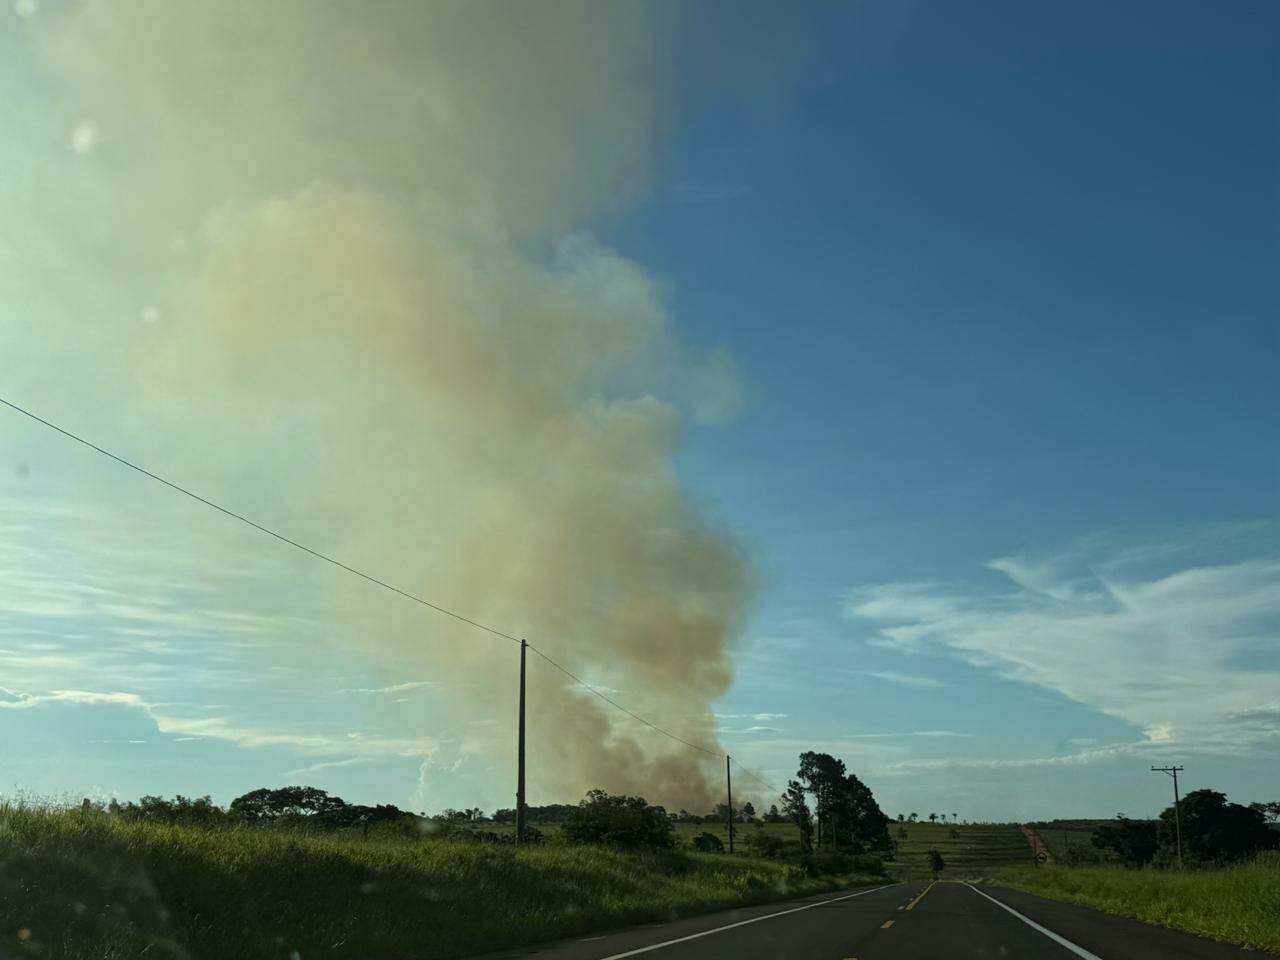 Fumaça do incêndio podia ser vista a quilômetros de distância do aeroporto. Foto: Larissa Bastos